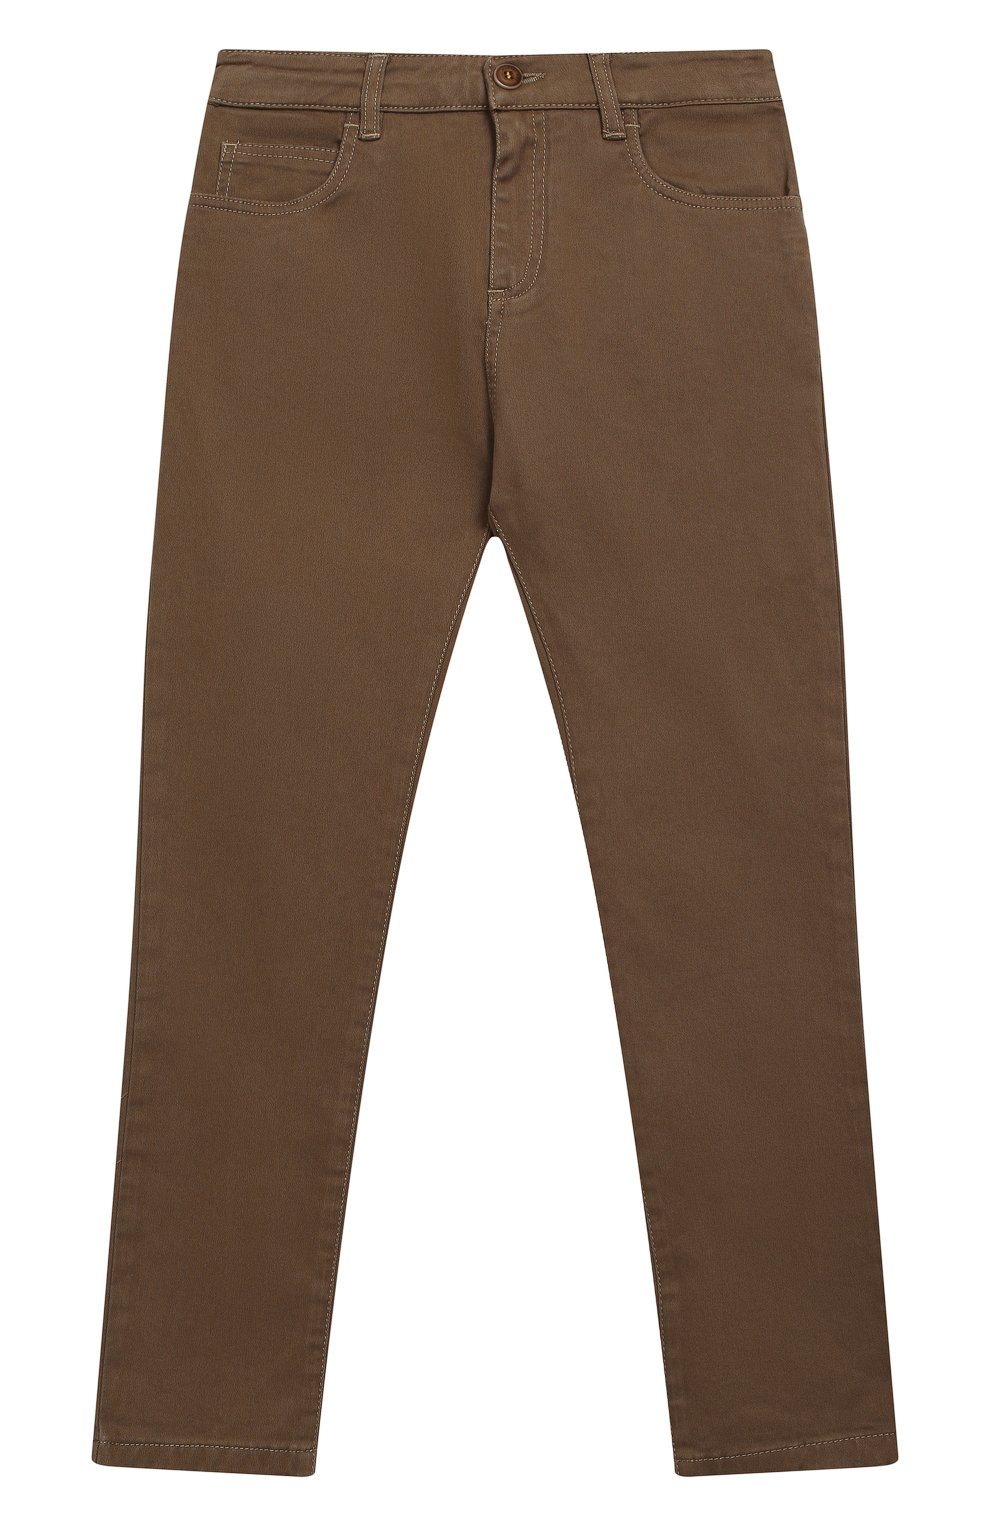 Хлопковые брюки прямого кроя MANUEL RITZ детские бежевого цвета .